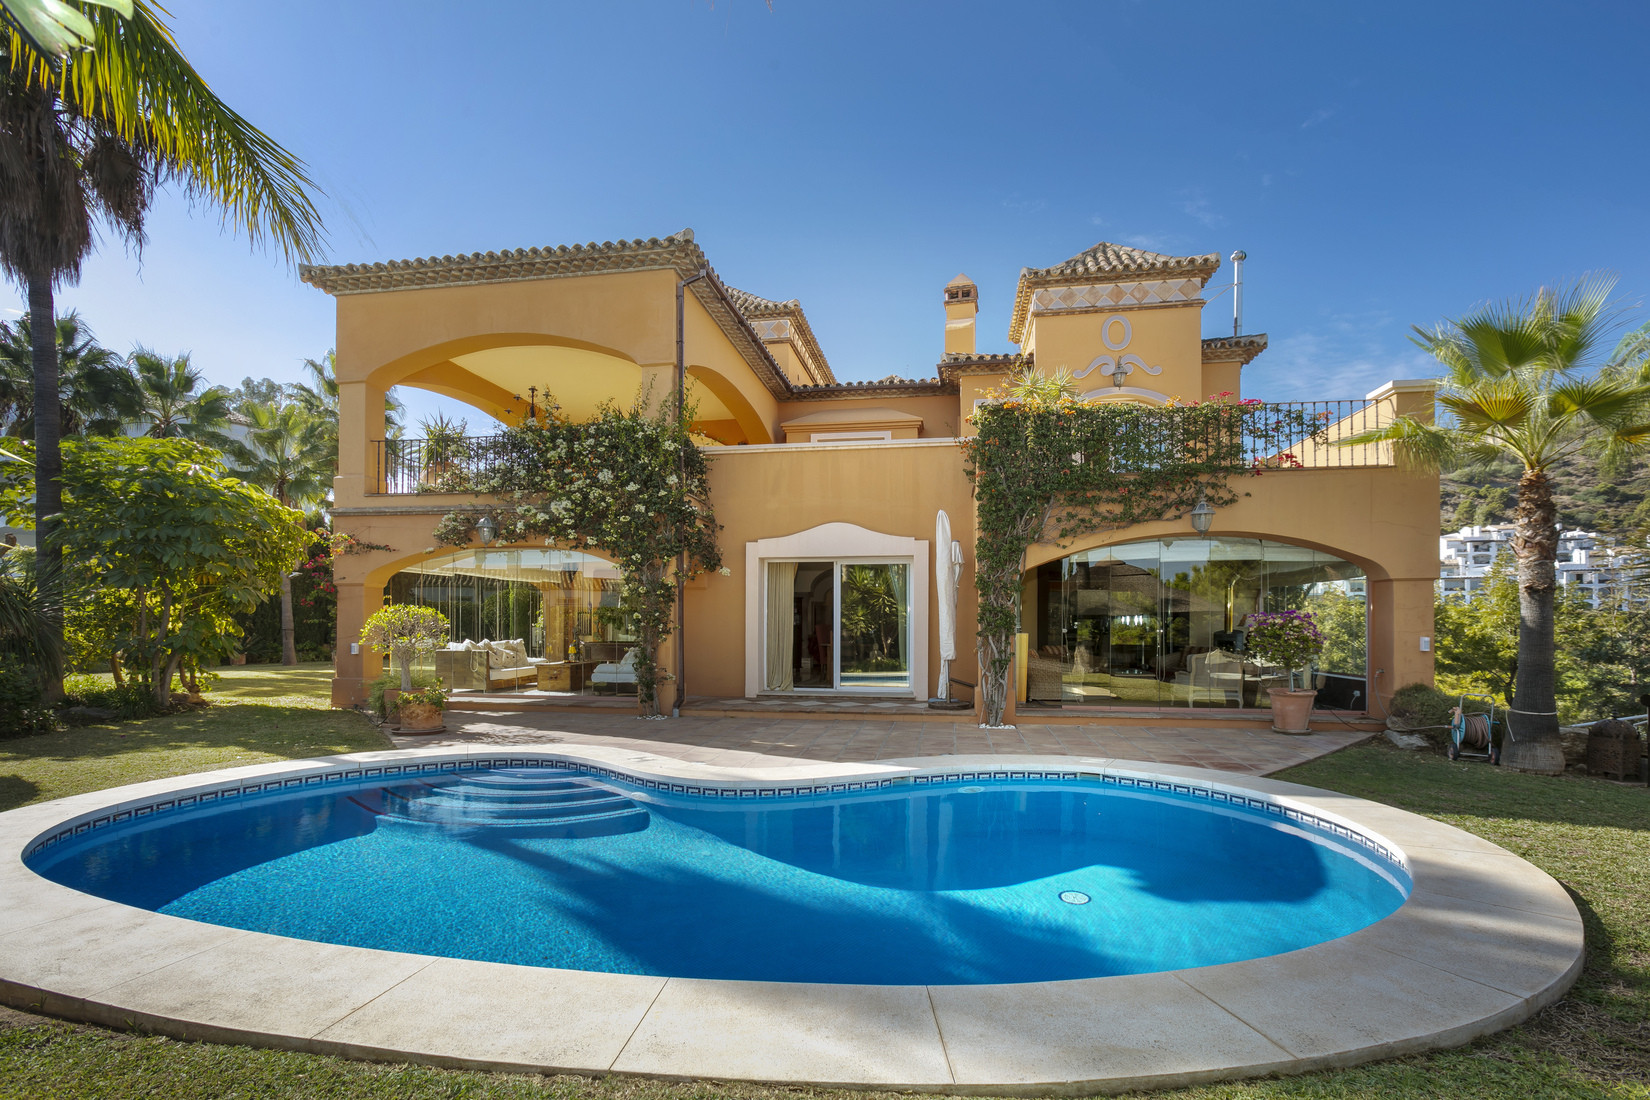 Mediterranean style villa in La Quinta 